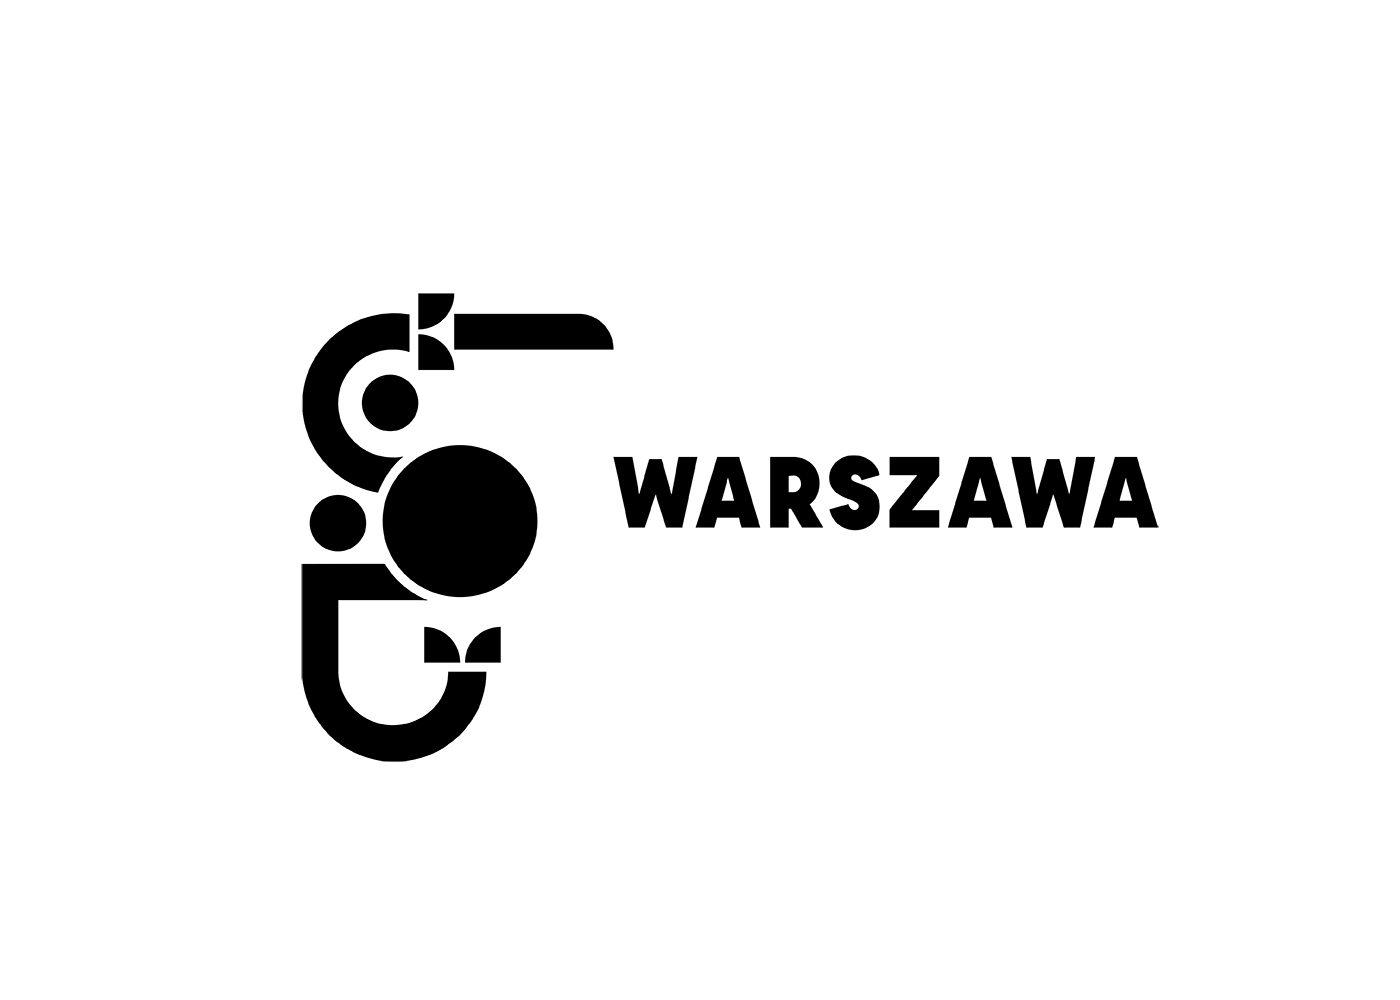 identity warsaw warszawa Project graphic desing ux ilustrator projektowaniegraficzne panpolelum